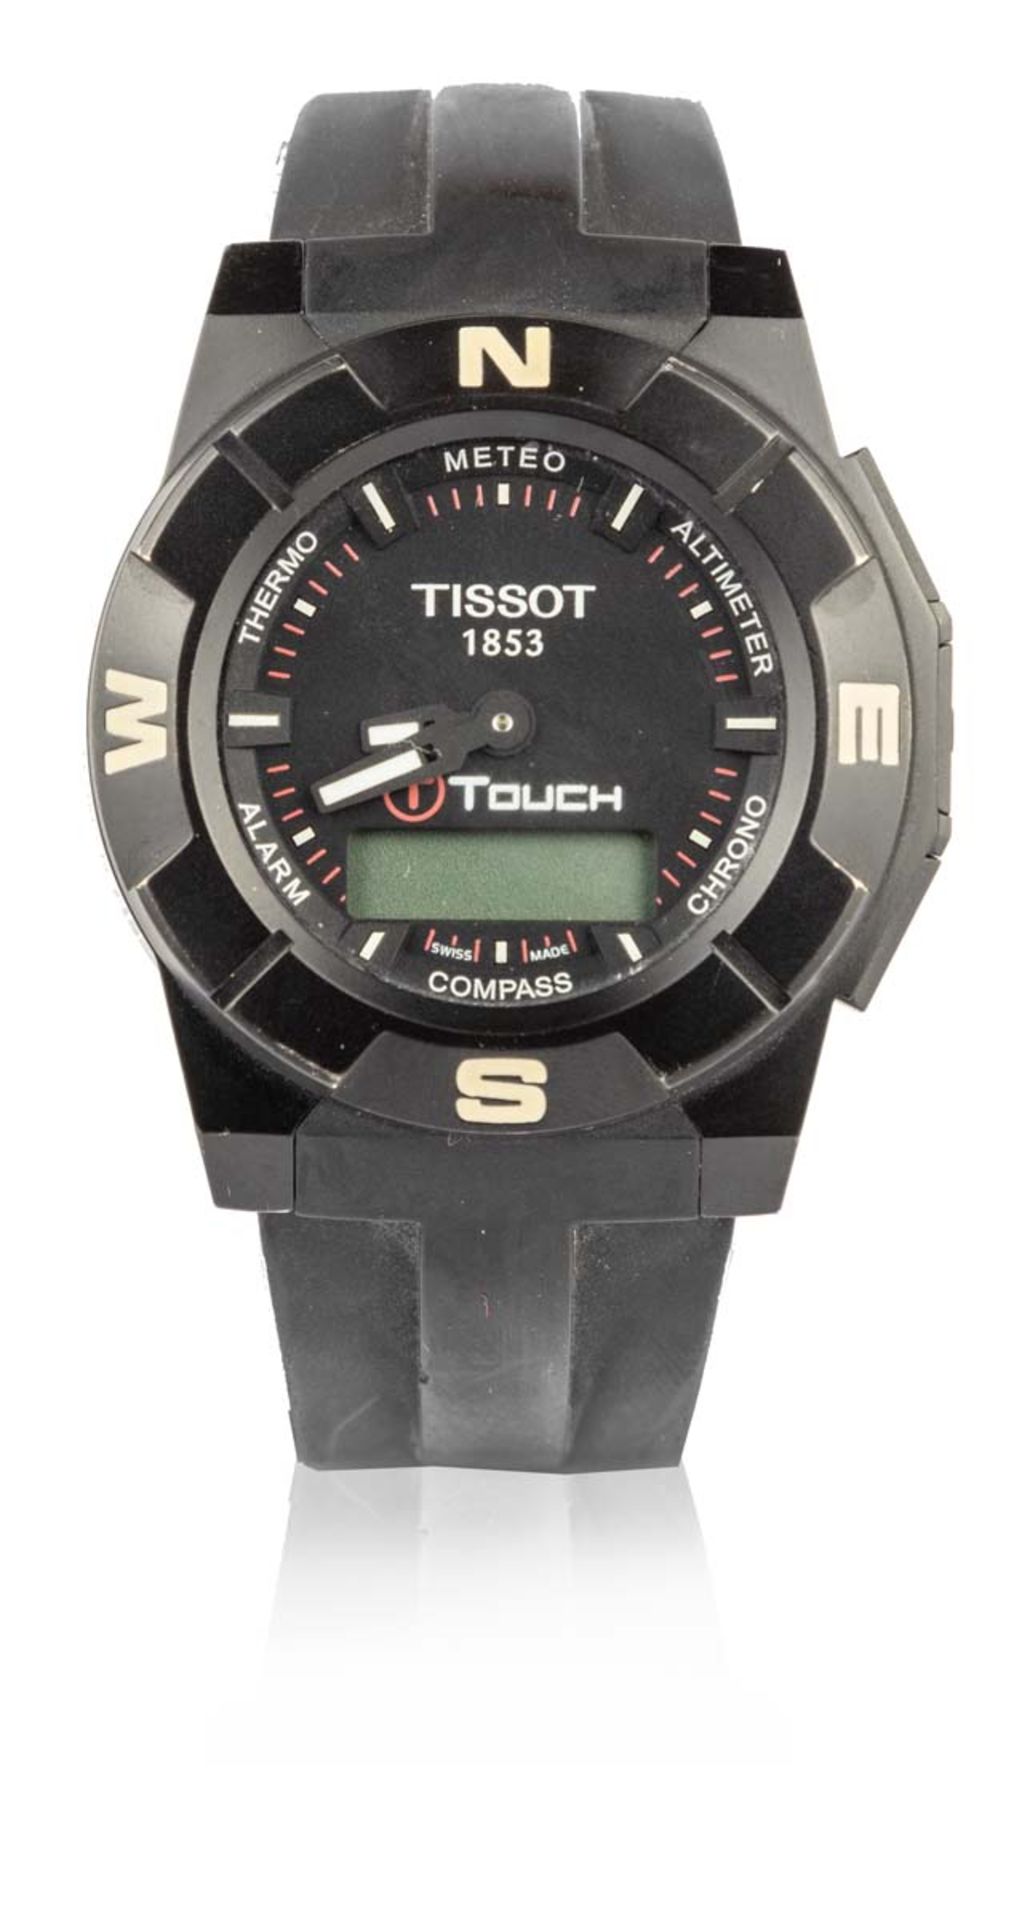 TISSOTT-TOUCHMontre bracelet noire avec multifonctions, chrono, météo, altimètre, compas, alarme,